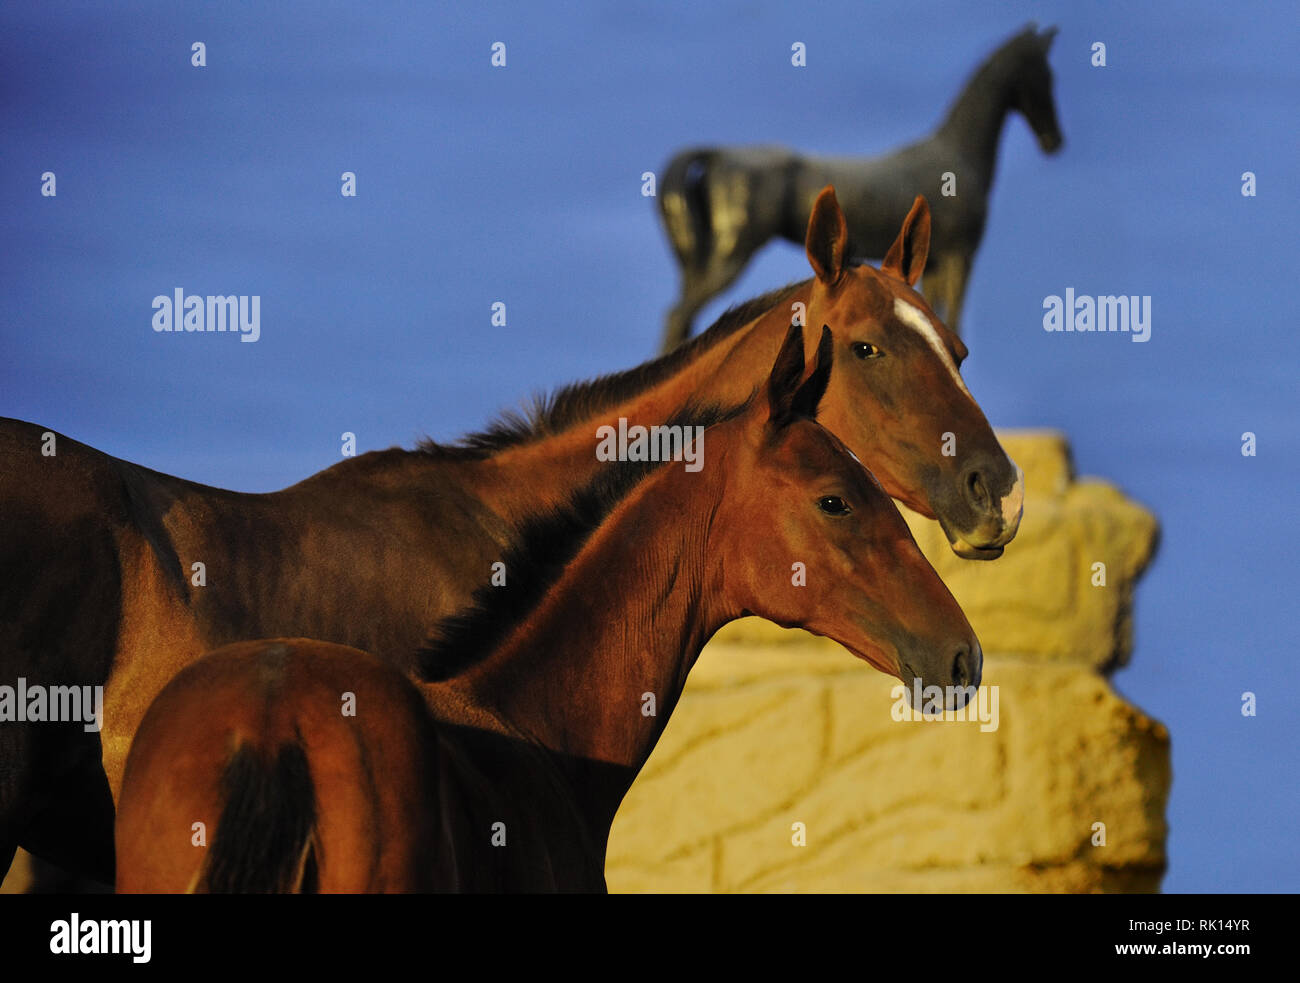 Zwei Pferde, Stute und Ihr Fohlen, auf der Suche nach einem die Kamera  stand neben einem Pferd Metall Statue auf dem Hintergrund. Horizontale,  Porträt, seitwärts Stockfotografie - Alamy